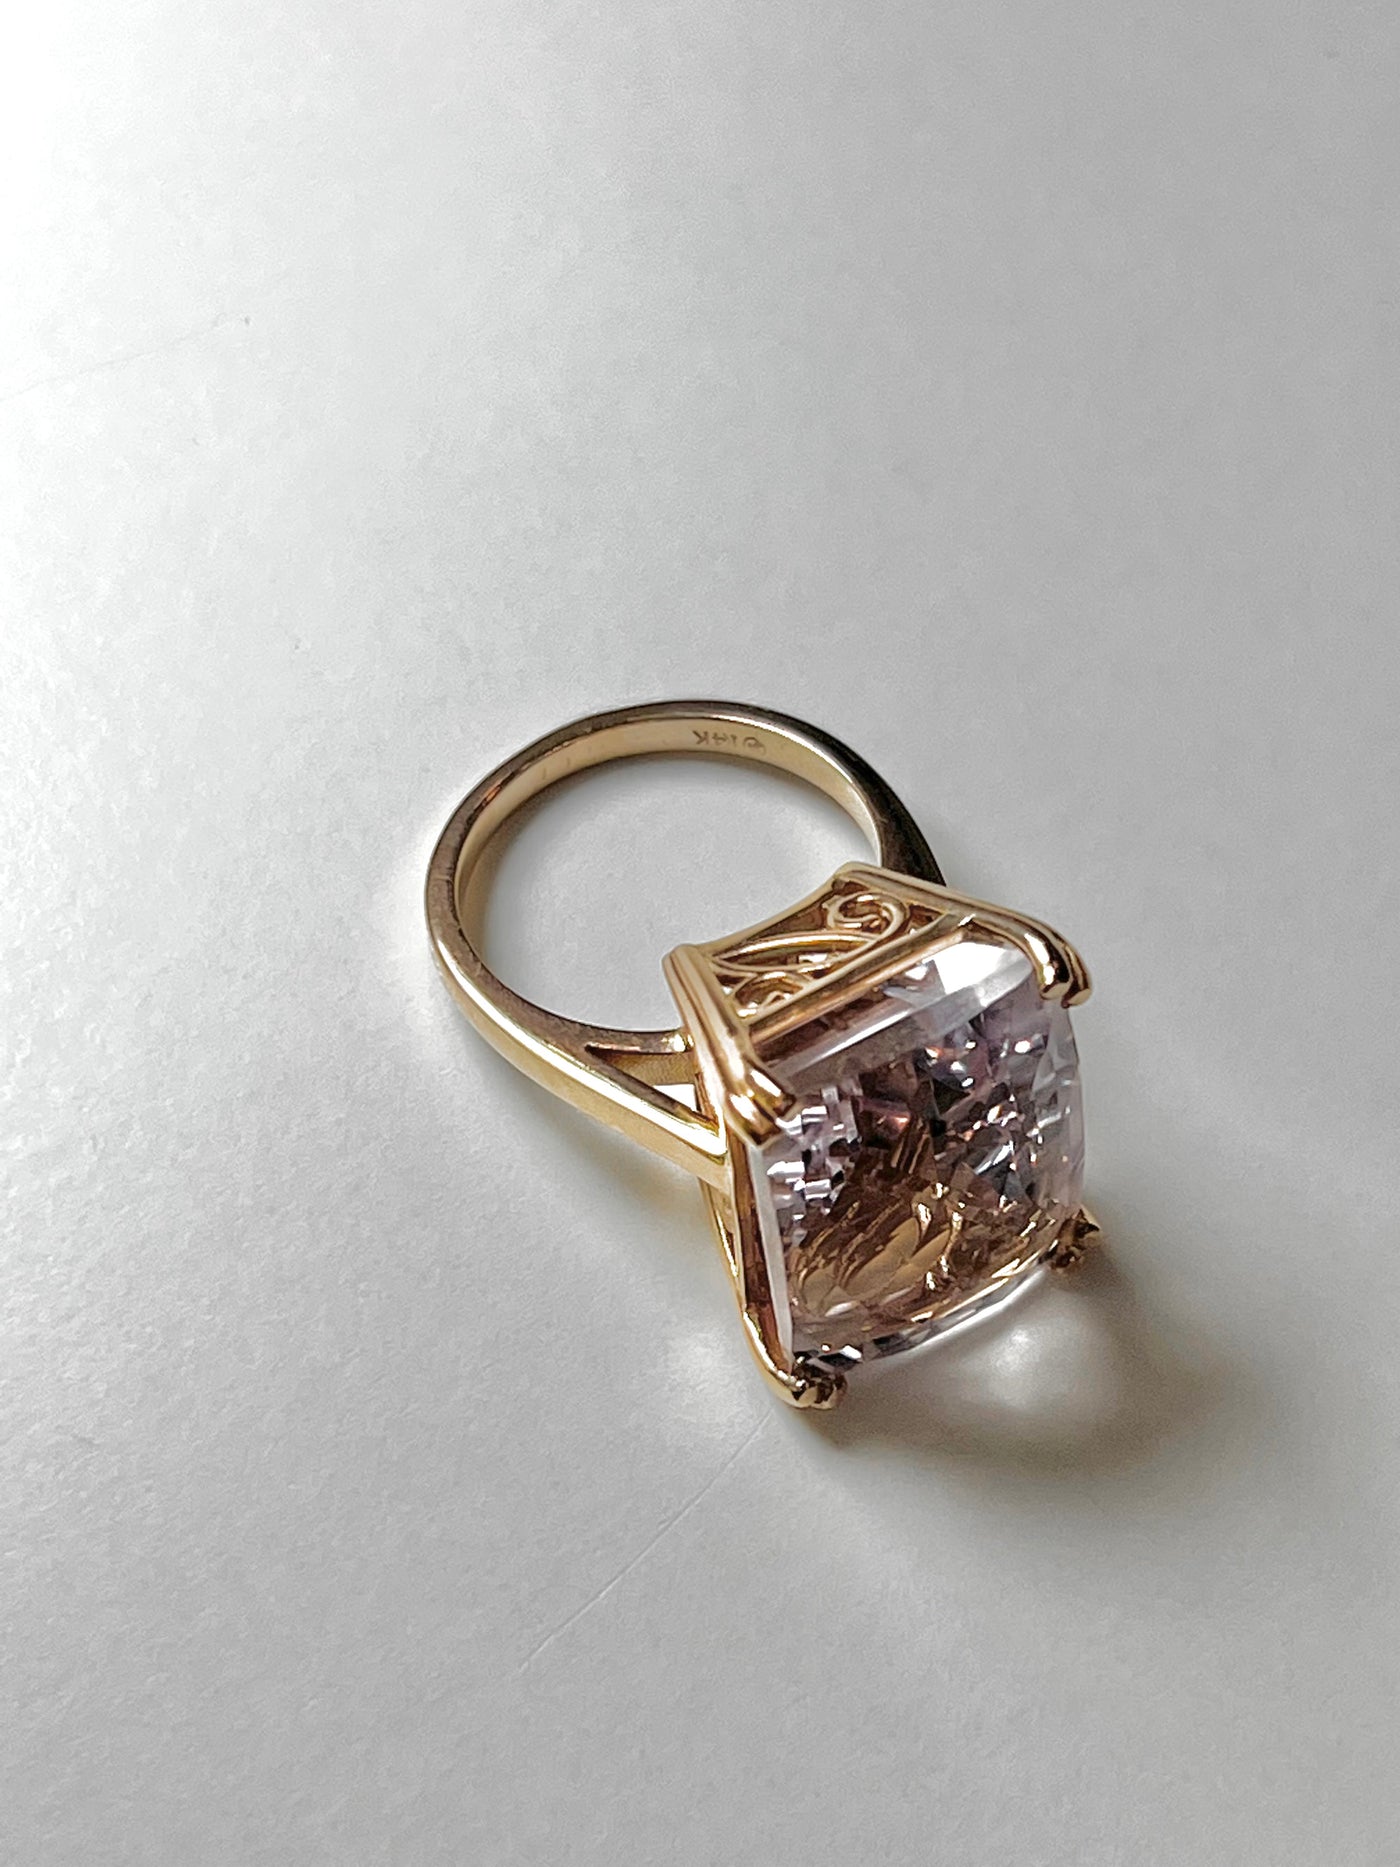 20ct Pink Kunzite Cocktail Ring - 14k  Rose Gold